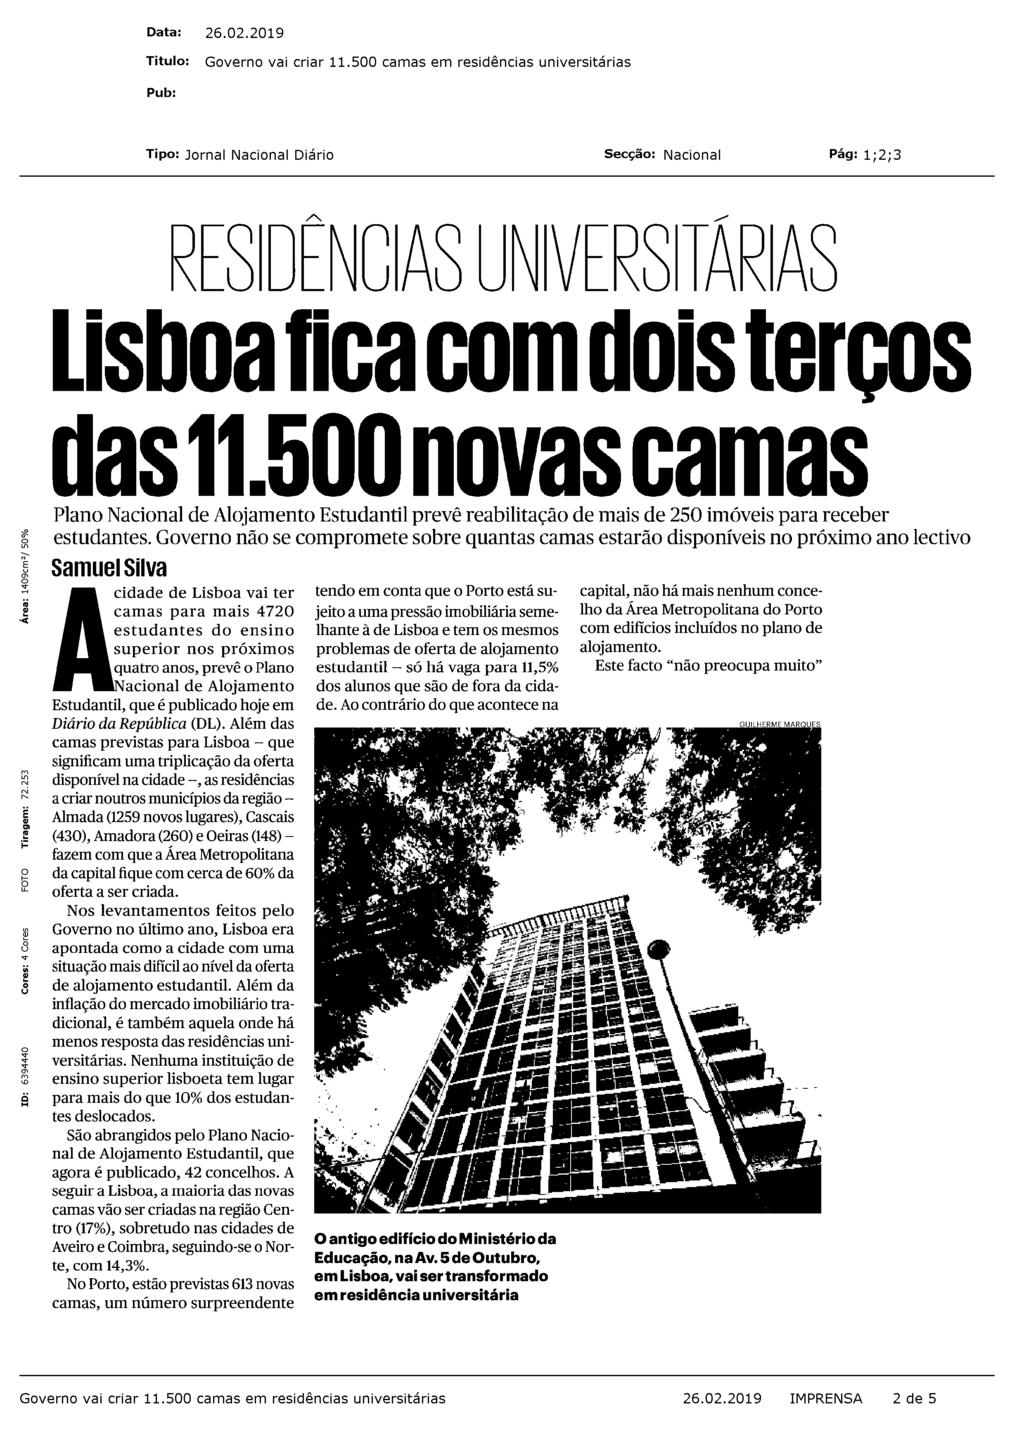 RESIDÊNCIAS UNIVERSITÁRIAS Lisboa fica com dois terços das 11.500 novas camas Plano Nacional de Alojamento Estudantil prevê reabilitação de mais de 250 imóveis para receber estudantes.